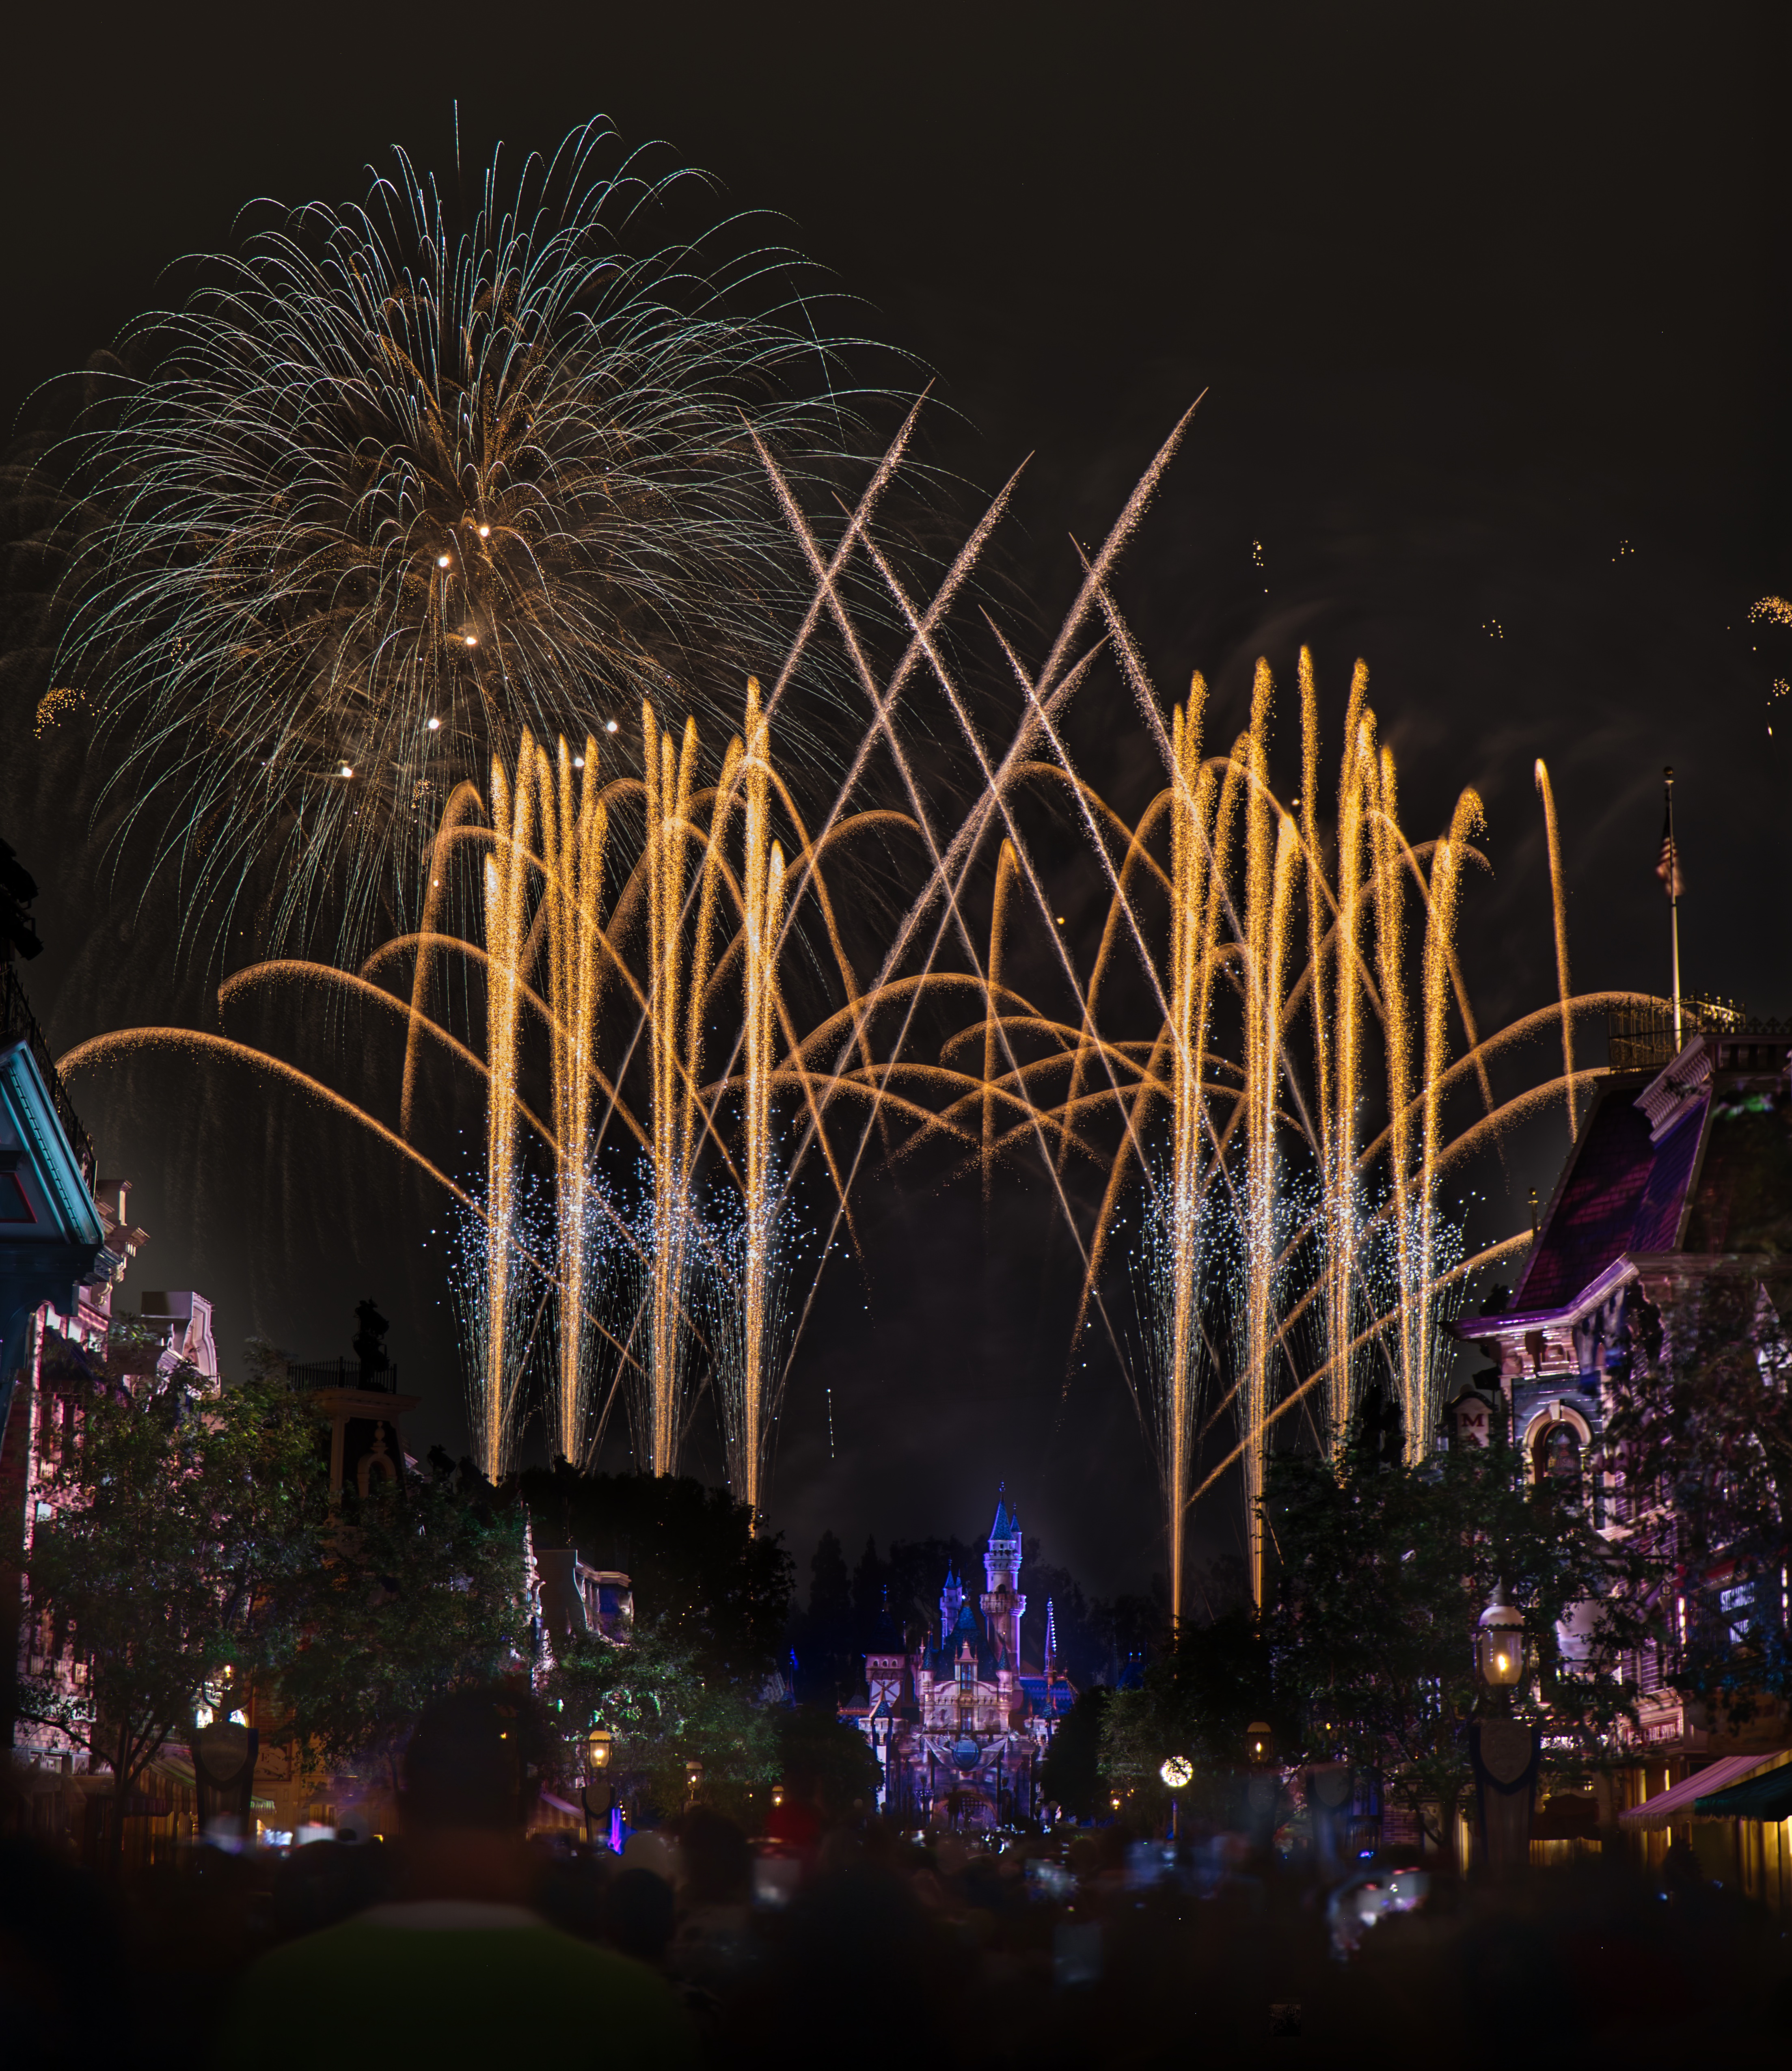 09.08.23 Ein Tag voller Magie und Feuerwerk - Abenteuer im Disneyland Anaheim